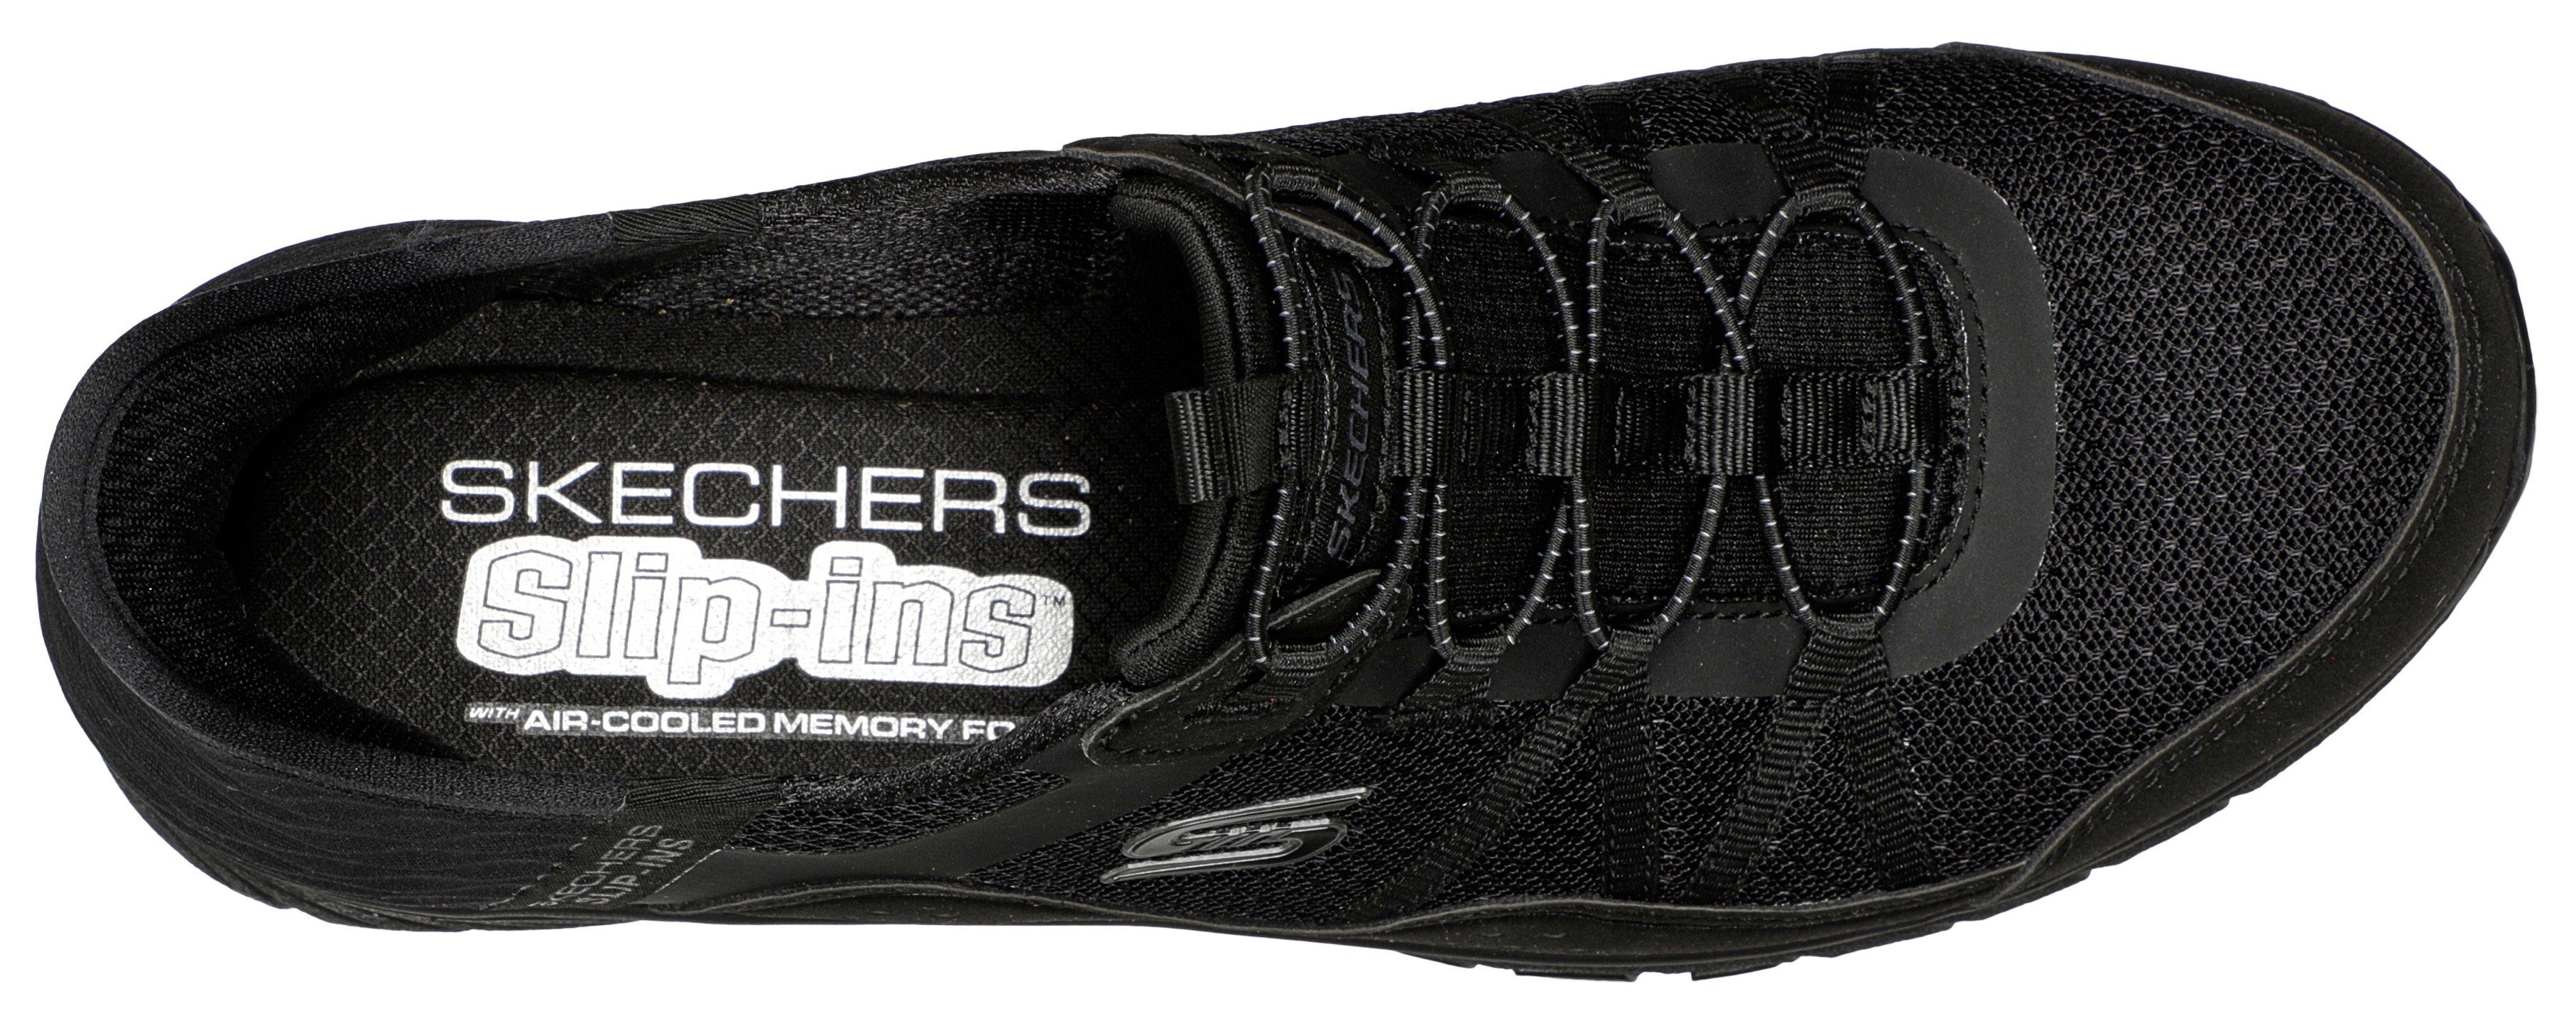 Skechers GRATIS SPORT-AWE im Sneaker monochromen Look Slip-On INSPIRING